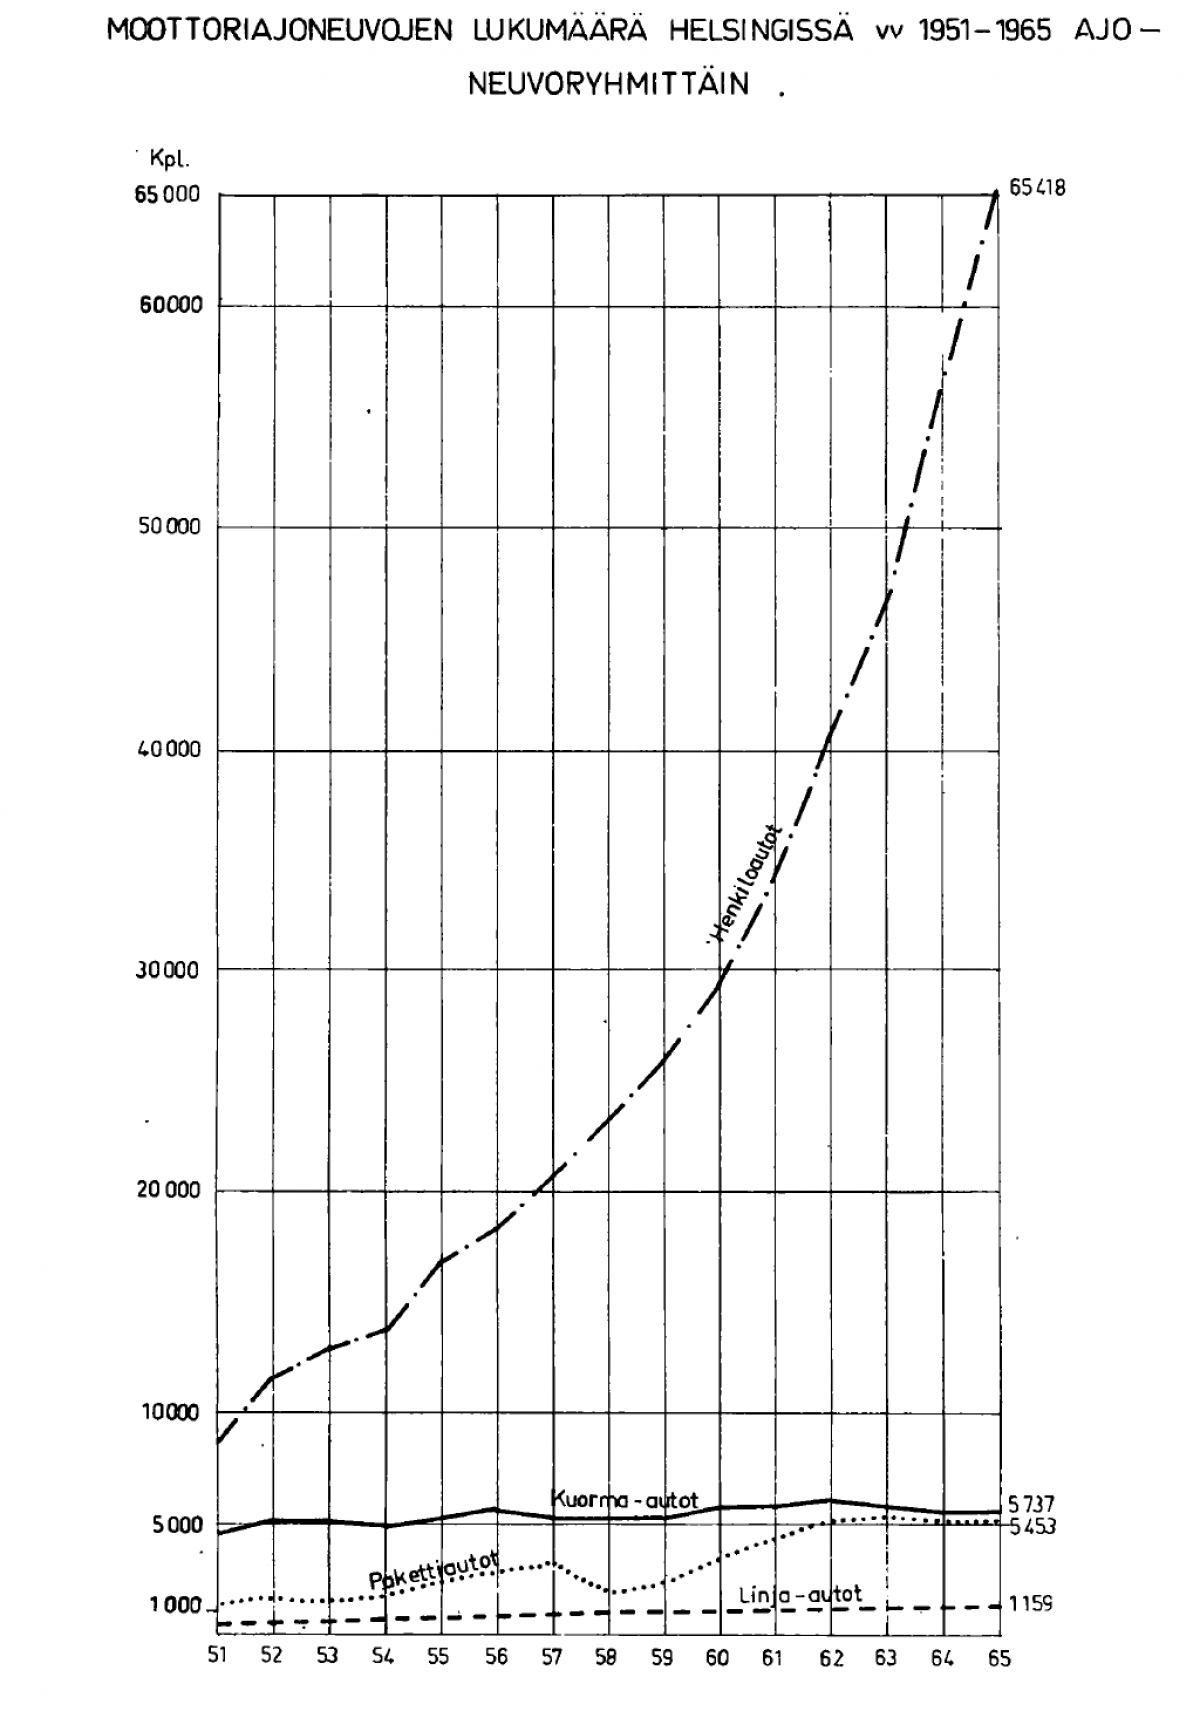 Diagrammen visar hur antalet motorfordon växte från ca 10 000 till 65 000 under åren 1951-1965.